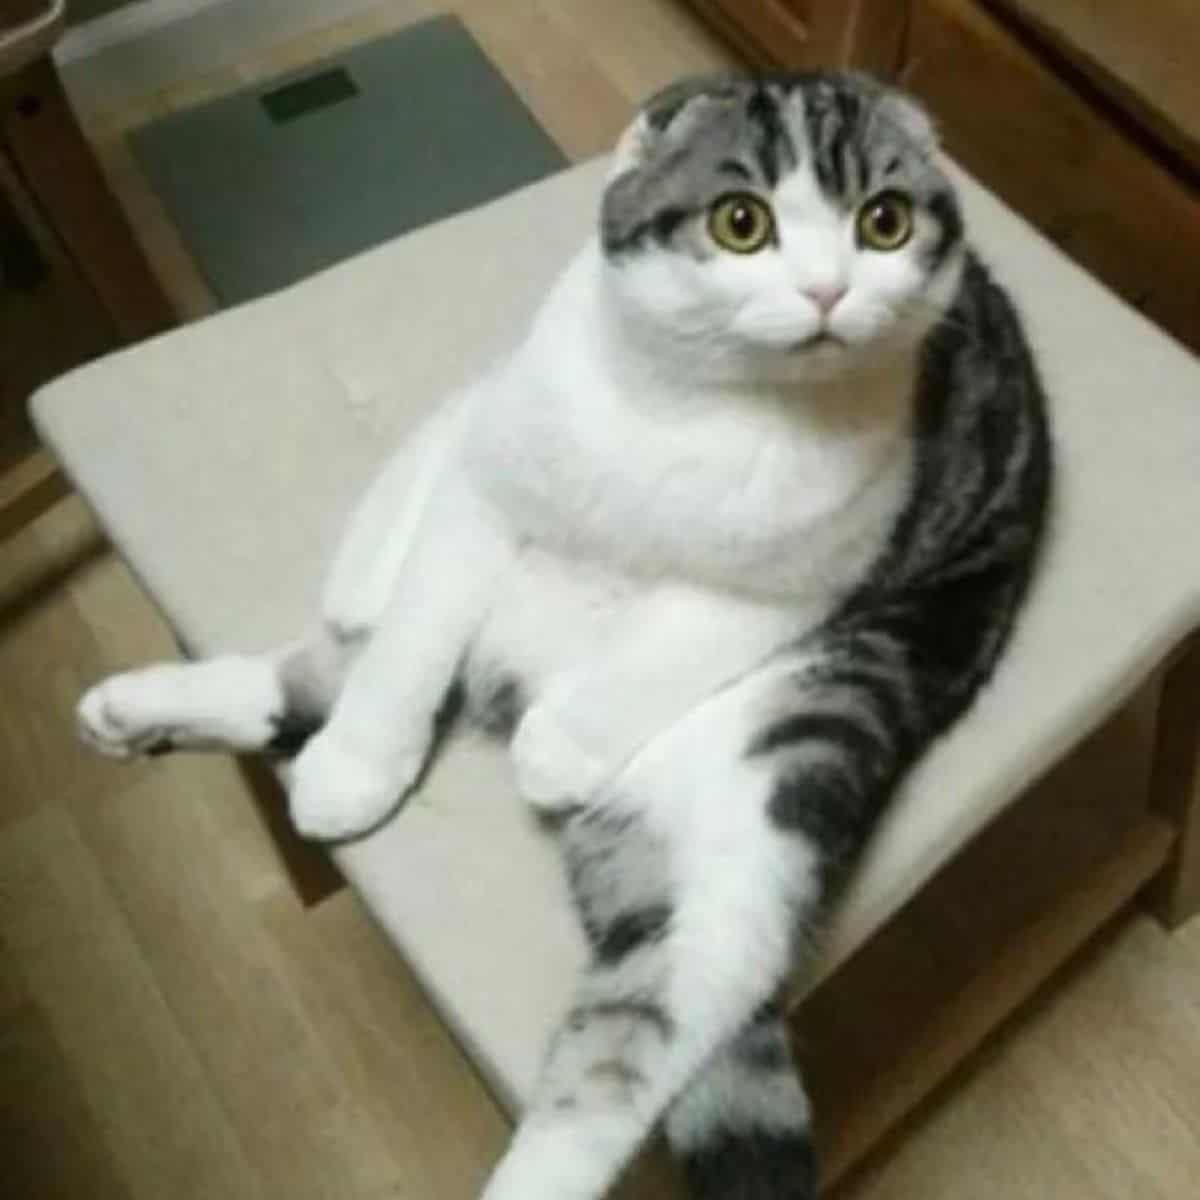 surprised cat sitting